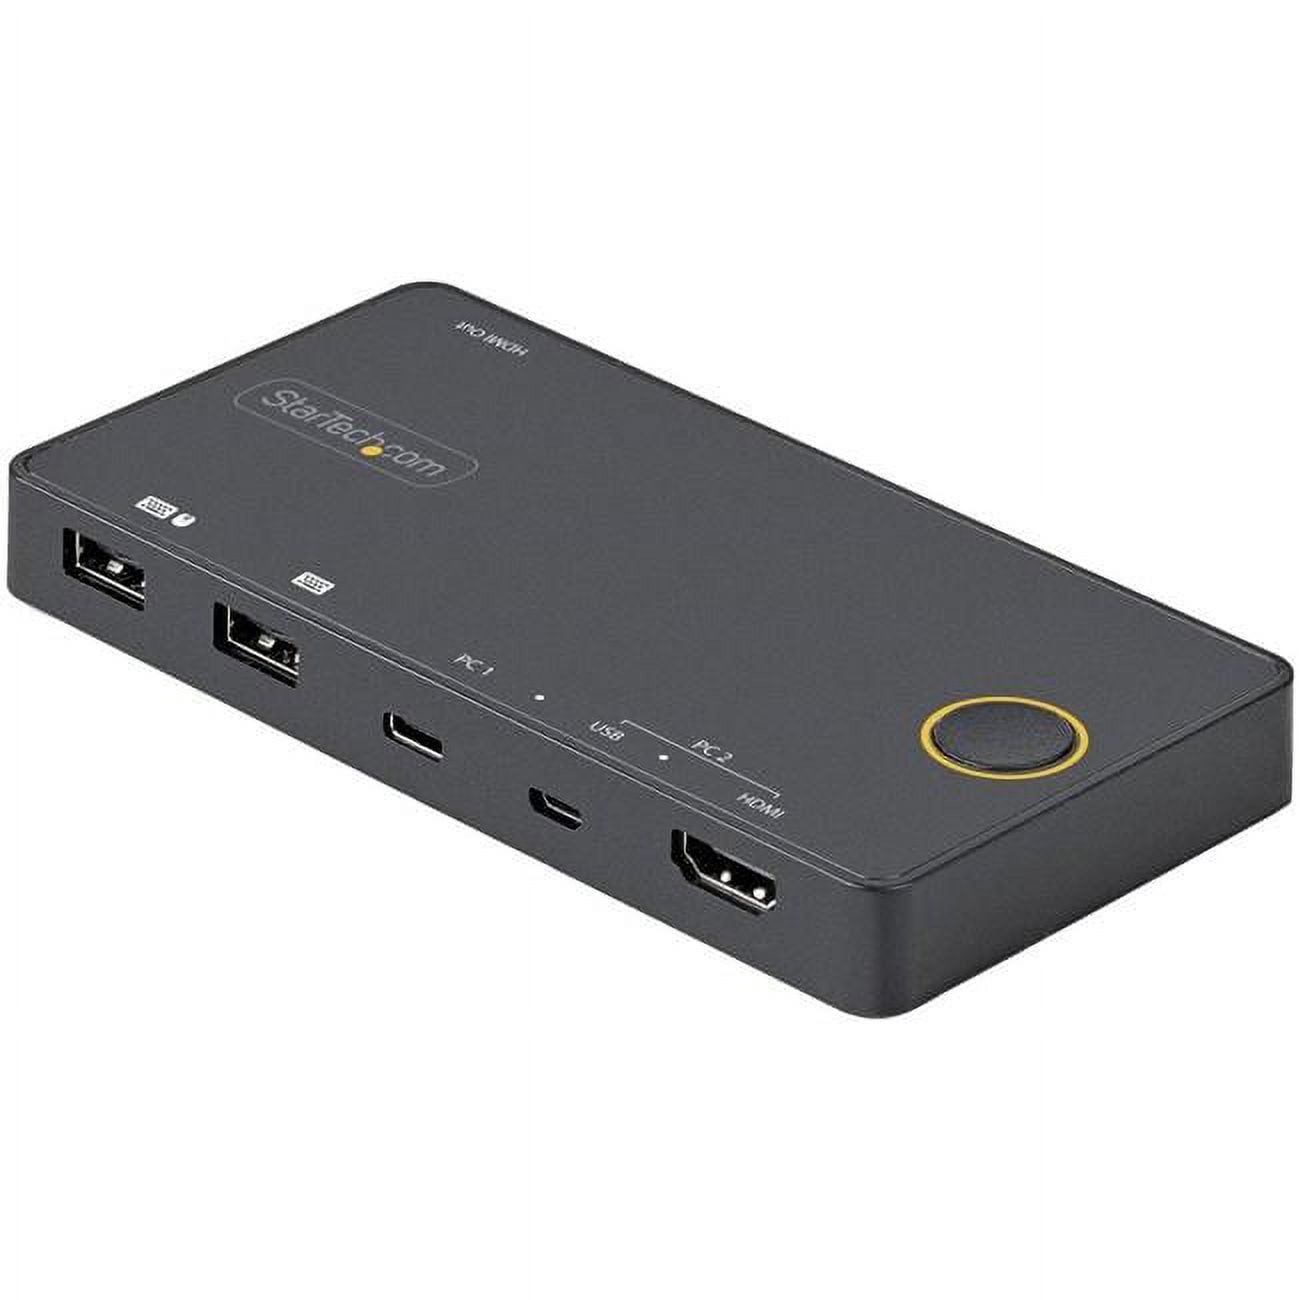 KVM Switch HDMI 2 Port, Commutateur KVM HDMI USB 4K@ 60Hz pour 2 PC  Partageant 1 moniteur, Clavier, Souris, Imprimante, Ultra HD, 3 USB 2.0,  avec 2